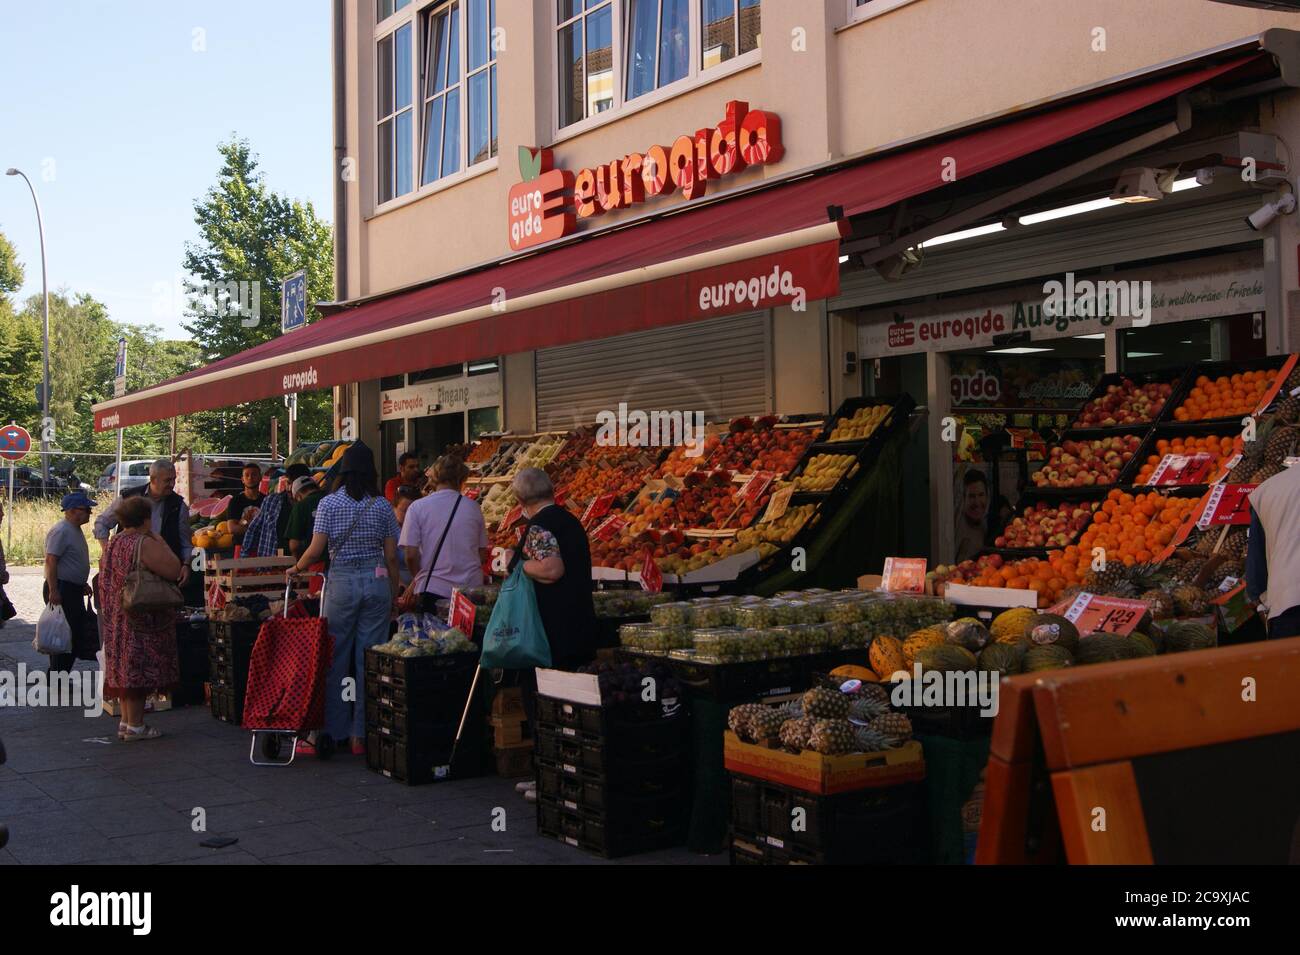 Supermarktkette eurogida, die überwiegend türkische Spezialitäten im Sortiment führt, in der Breiten Straße in Berlin-Spandau Stock Photo